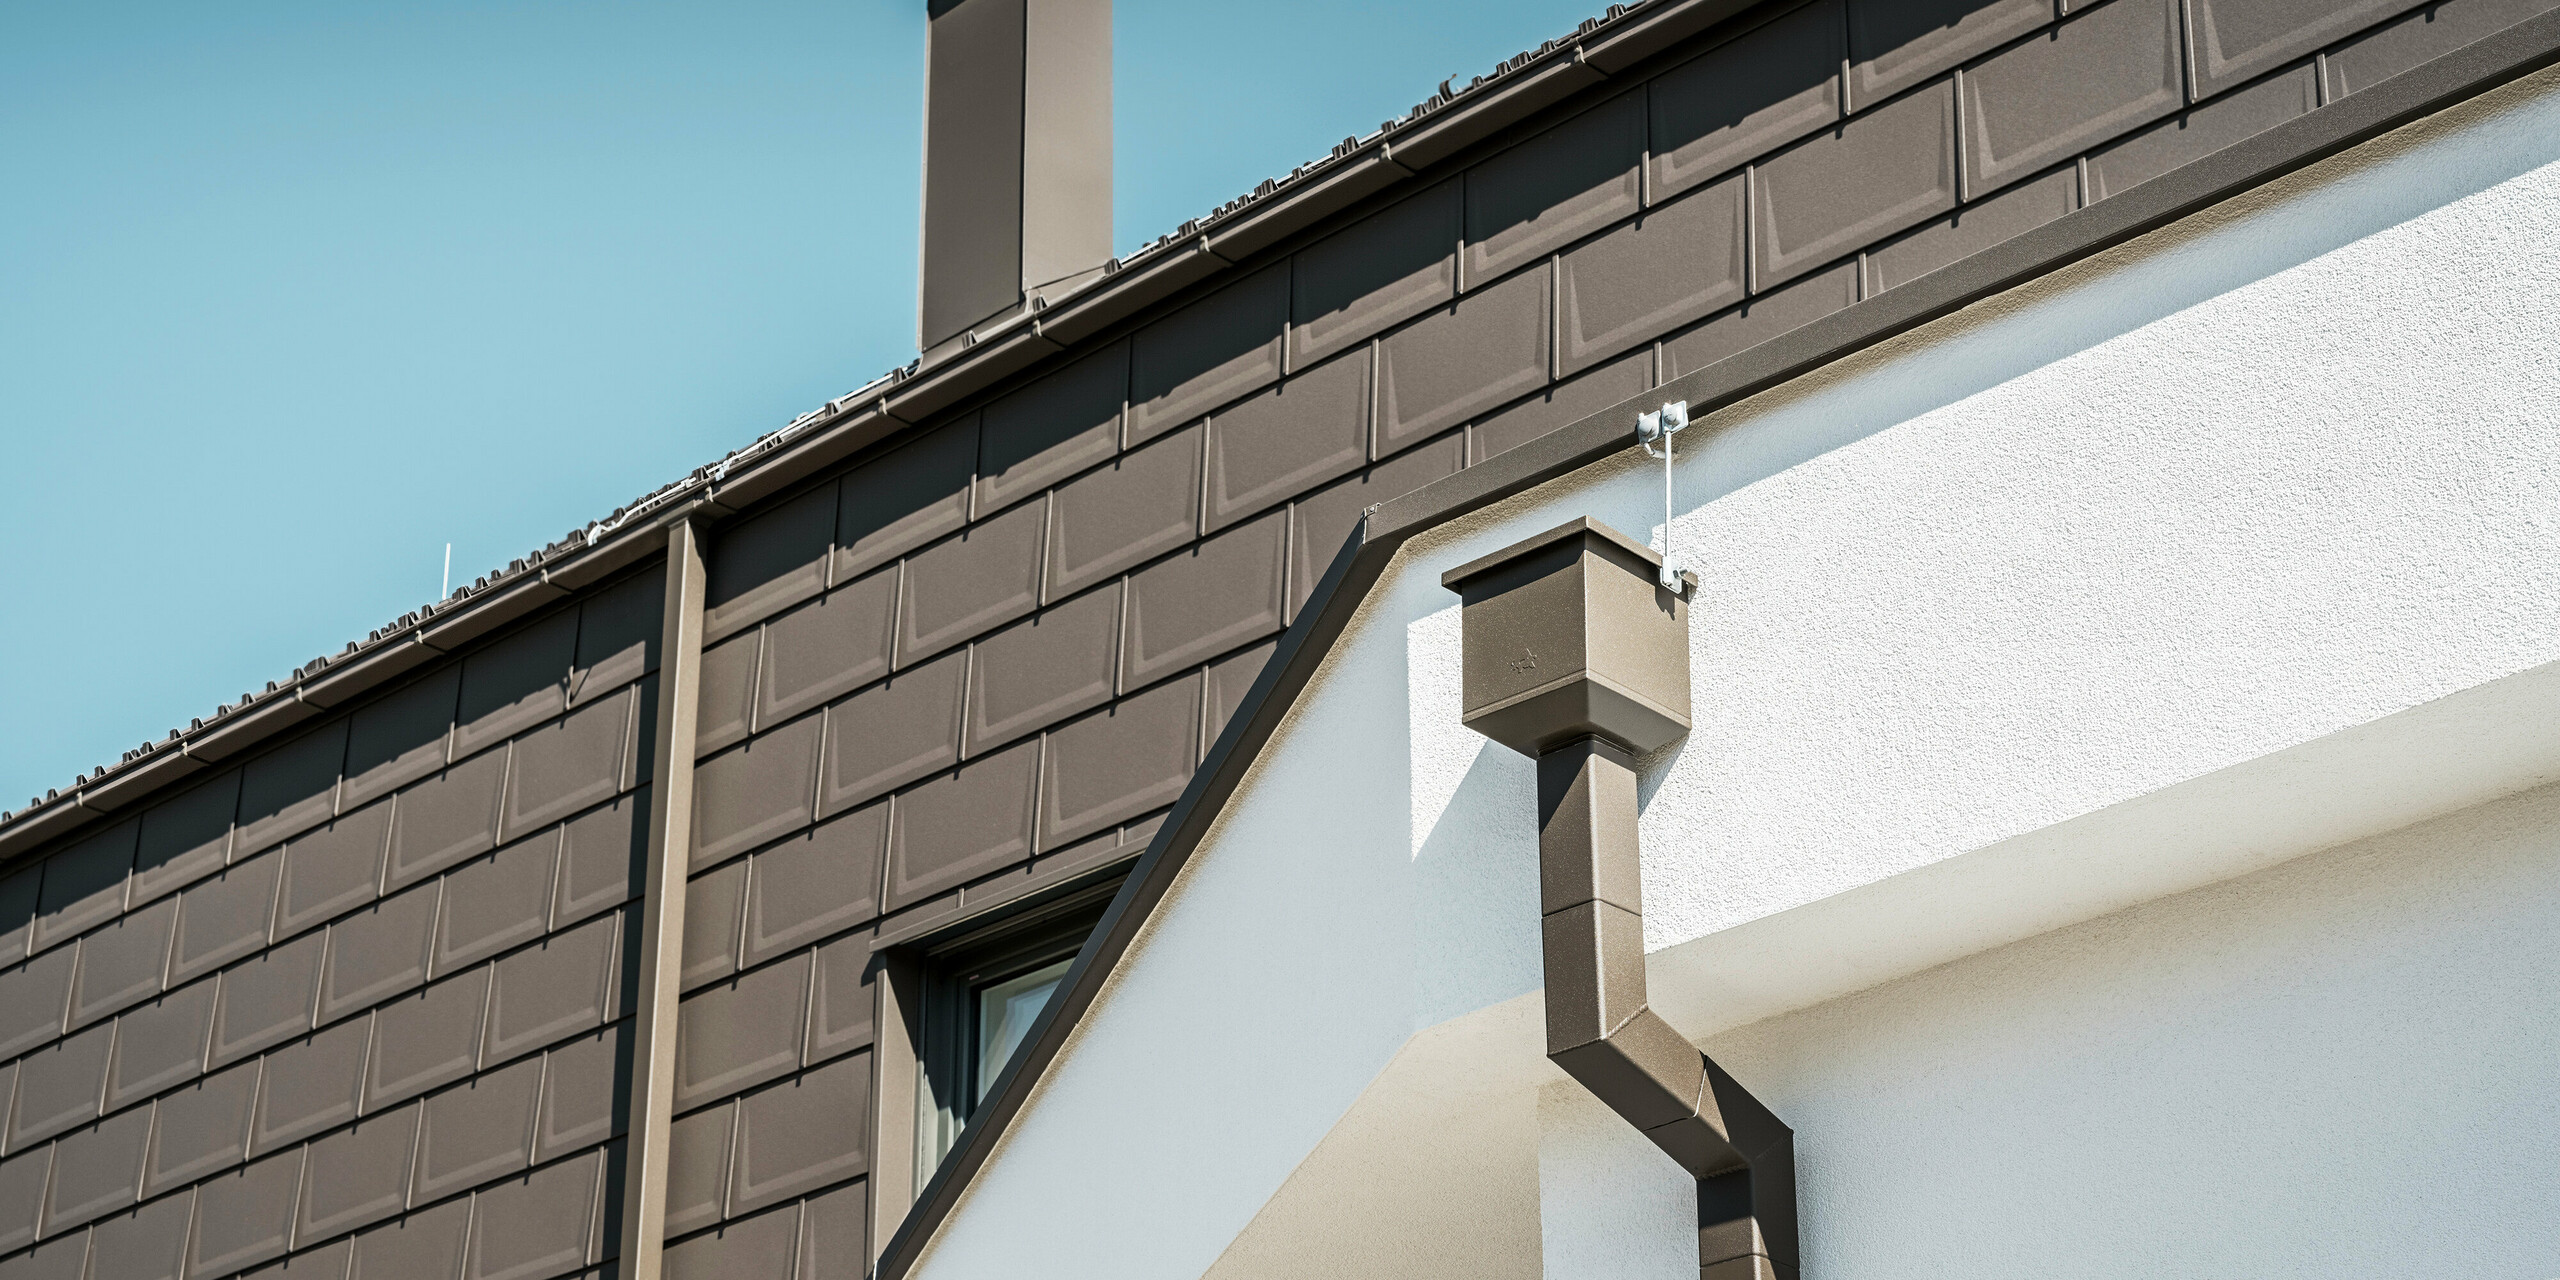 Detailní pohled na hranu střechy nebo fasádu rodinného domu v rakouském Neukirchenu, který je vybaven střešními panely PREFA R.16 v P.10 hnědé. Jak střešní panely, které v této budově fungují jako střešní a fasádní obklady, tak střešní odvodňovací systém, sestávající ze čtyřhranné trubky, sběrného boxu na vodu a boxového okapu, jsou ve stejné barvě a nabízejí konzistentní, vysoce kvalitní Dokončit. Použití výrobků PREFA dodává nemovitosti moderní vzhled, zatímco estetické začlenění odvodňovacích prvků podtrhuje funkční eleganci designu.